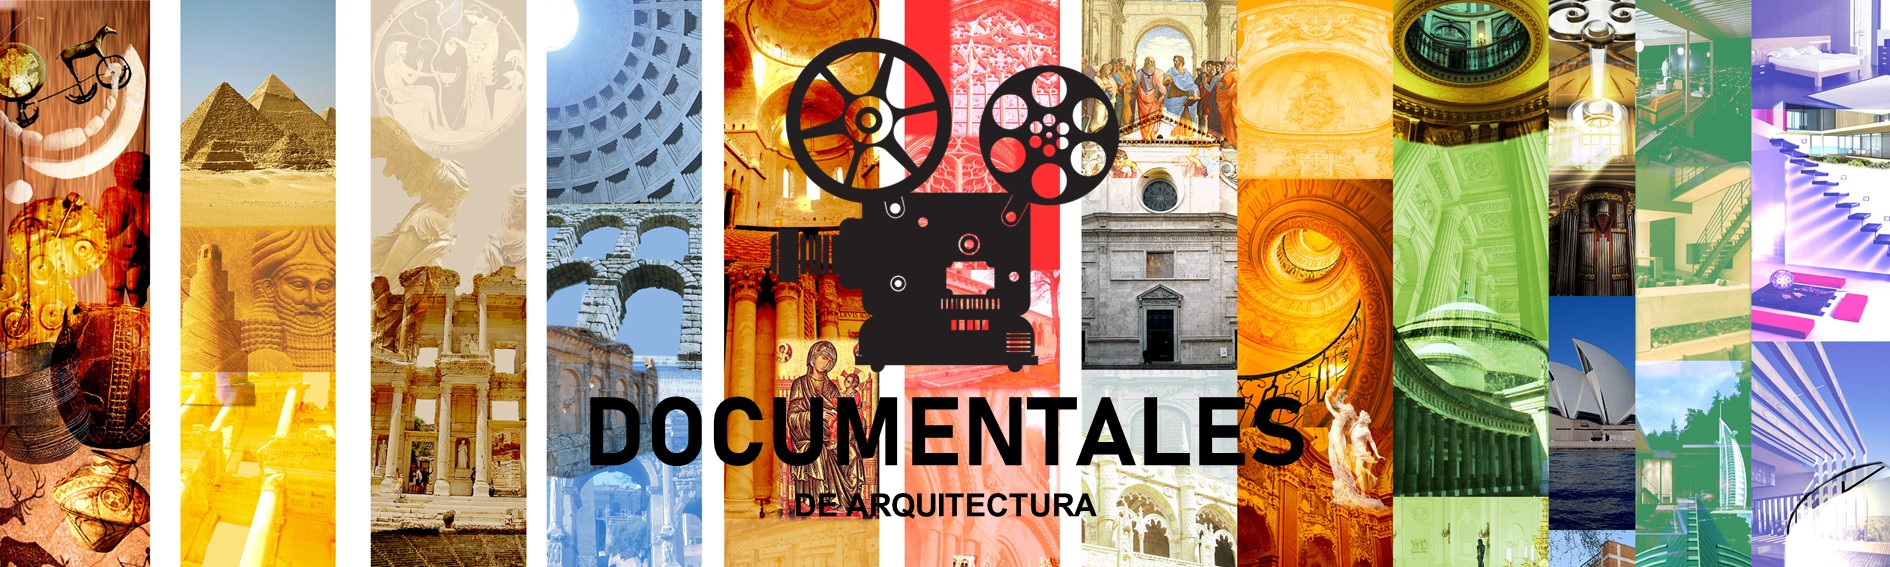 Documentales de arquitectura